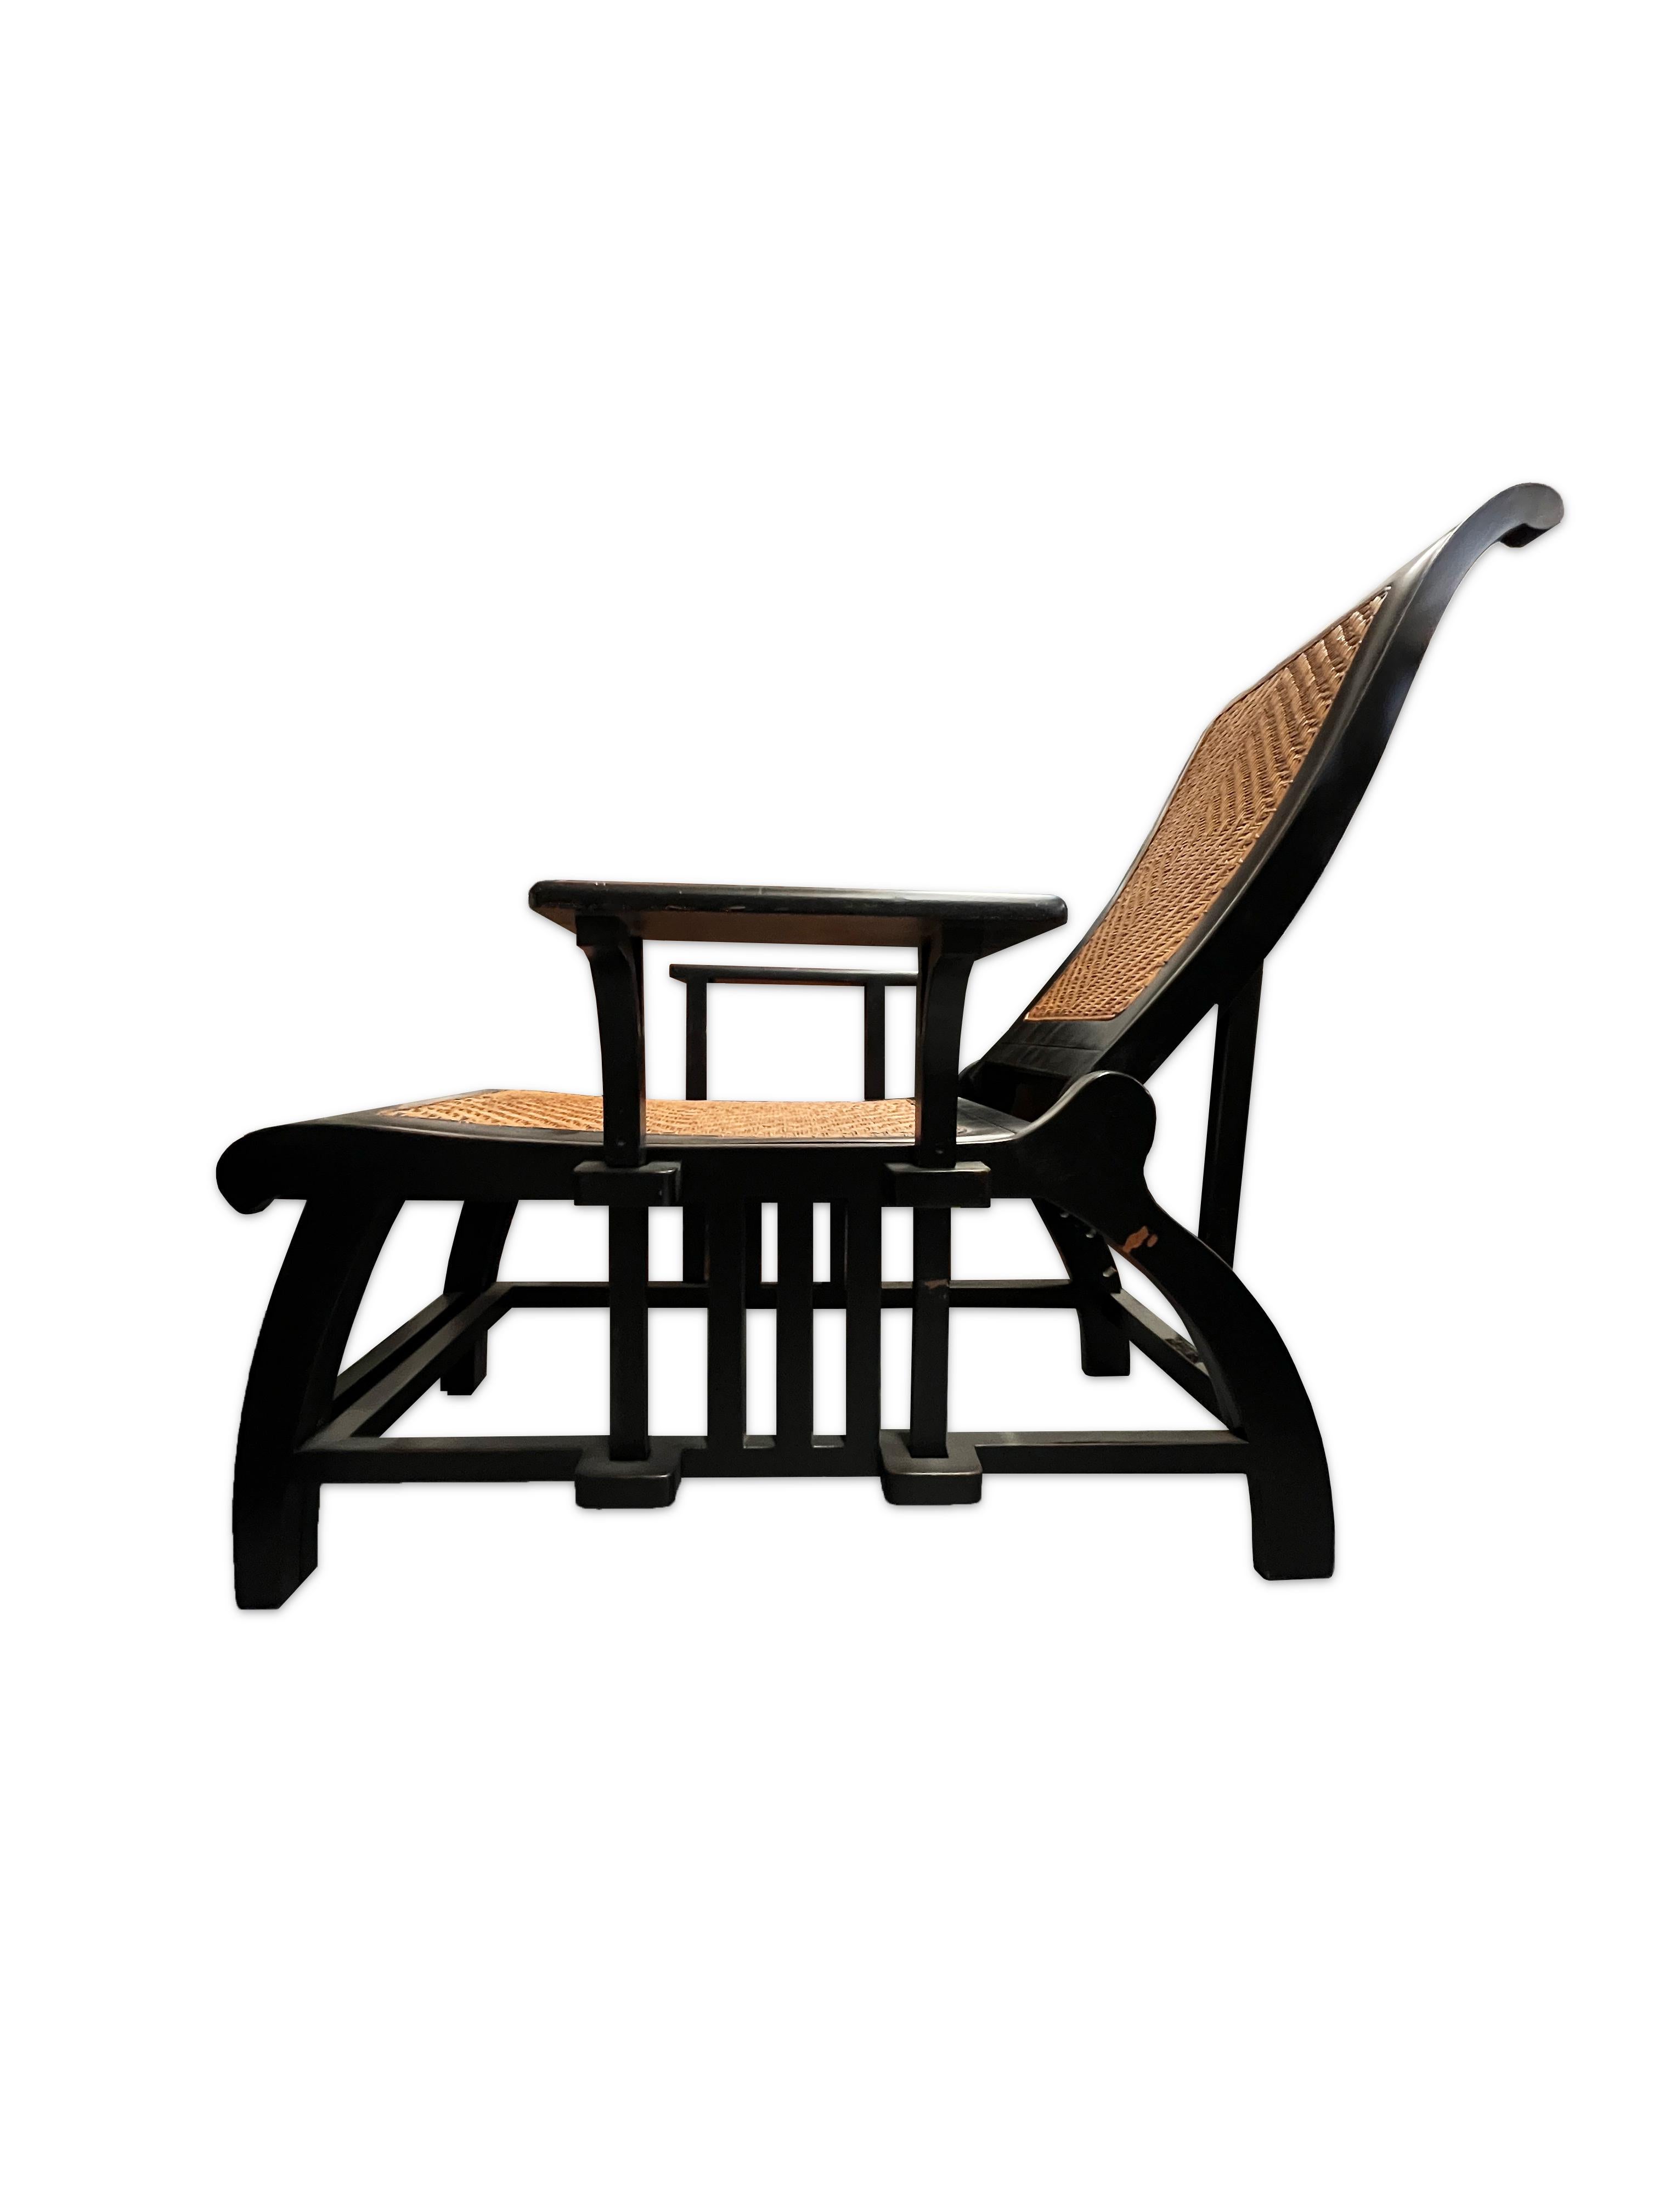 Dieses Paar Chaiselongue-Sessel eignet sich hervorragend für den Außenbereich. Dieser bequeme Sessel lässt sich zu einer vollständigen Chaiselongue öffnen und hat eine verstellbare Rückenlehne. Die Rückenlehne und der Sitz sind aus geflochtenem